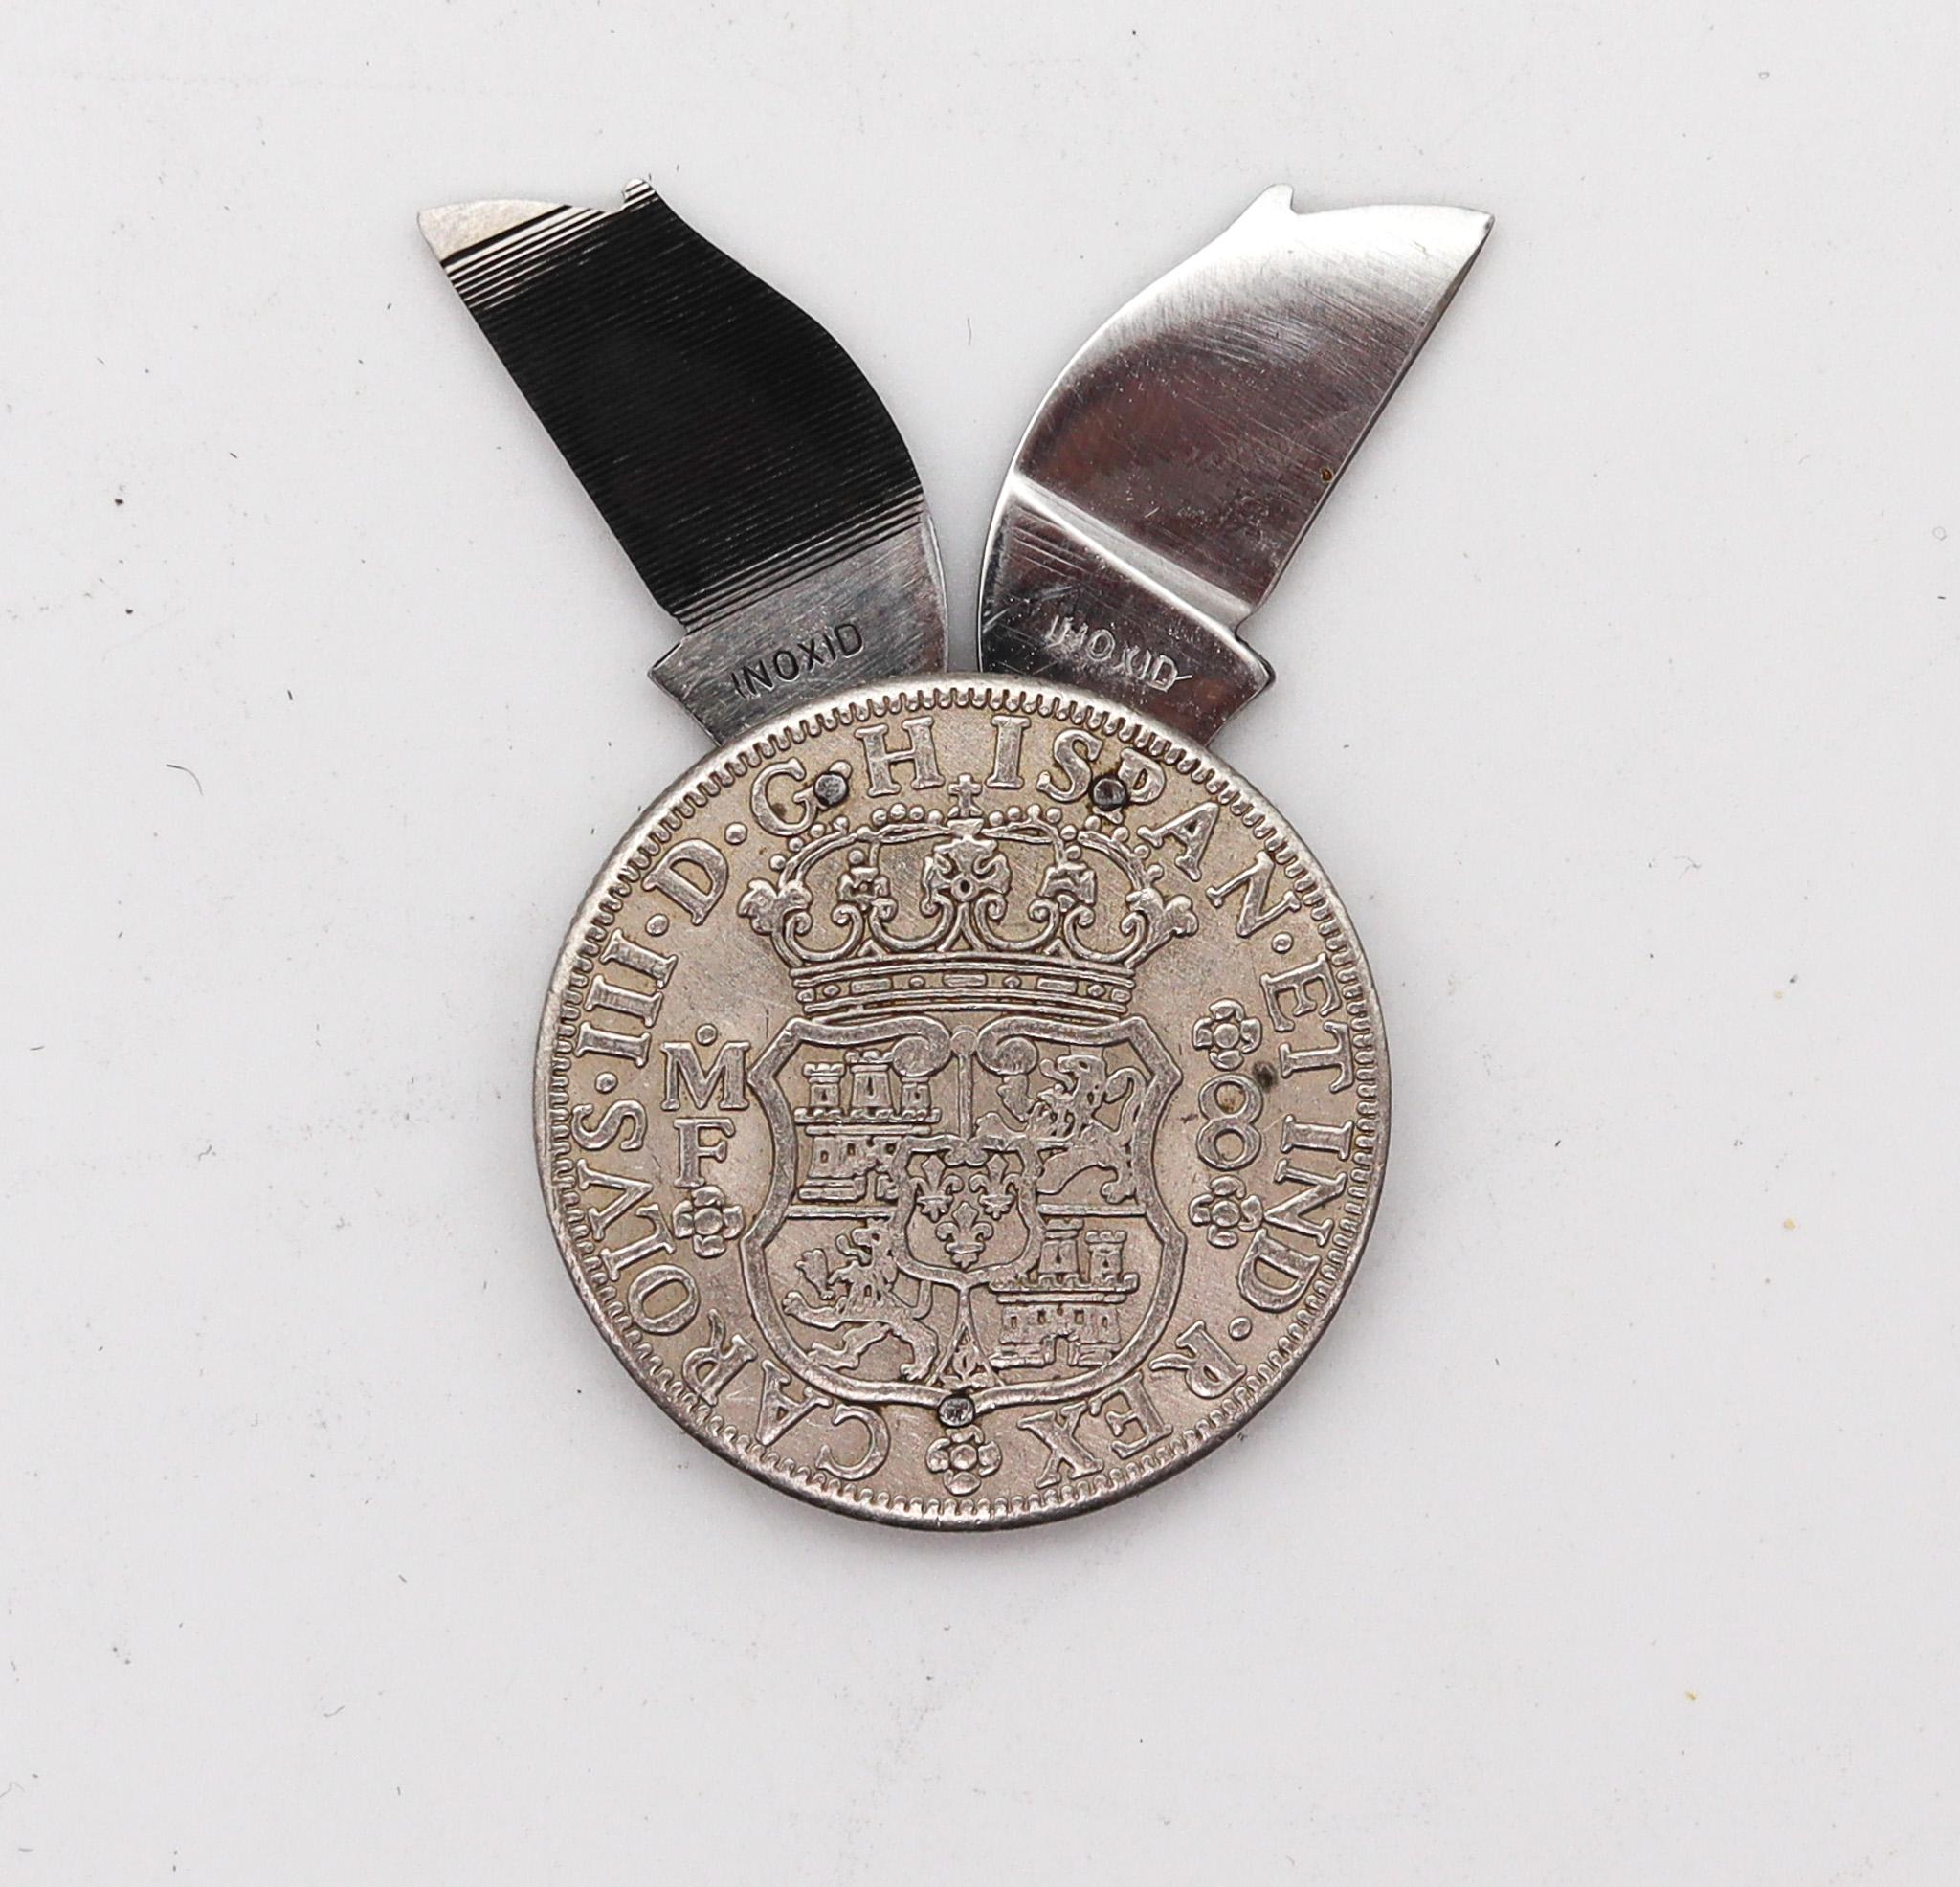 Ein Taschenmesser mit einer spanischen Münze.

Schöne antike Taschenmesser, in Spanien erstellt, zurück in den 1930er Jahren. Dieses Taschenmesser ist sehr ungewöhnlich, da es mit einer spanischen Münze und massivem Solinger Stahl gefertigt wurde.